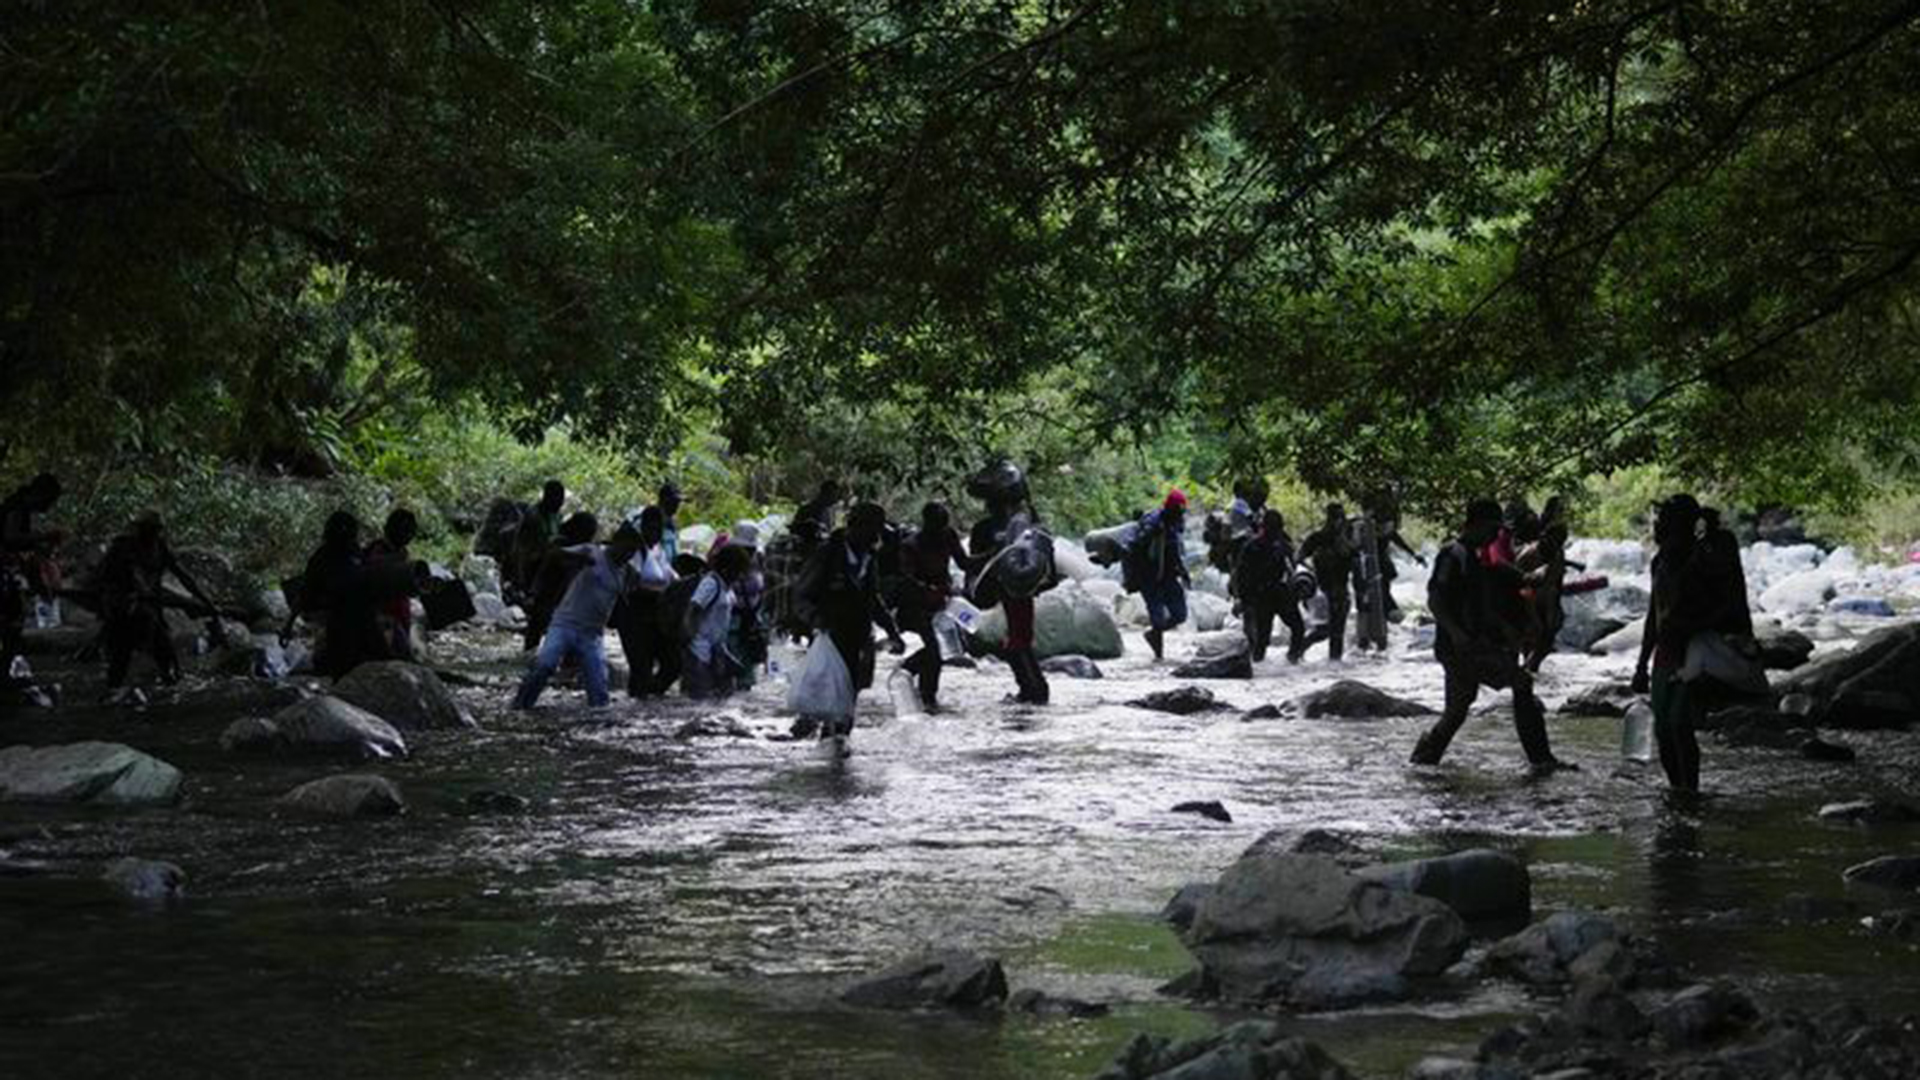 Migrantes cruzan el río Acandi mientras continúan su viaje hacia el norte, en Acandi, Colombia, el miércoles 15 de septiembre de 2021. Los migrantes, luego de un viaje multinacional hacia los EEUU, continuarán su viaje a través de la selva conocida como el Tapón del Darién. (AP Photo/Fernando Vergara)